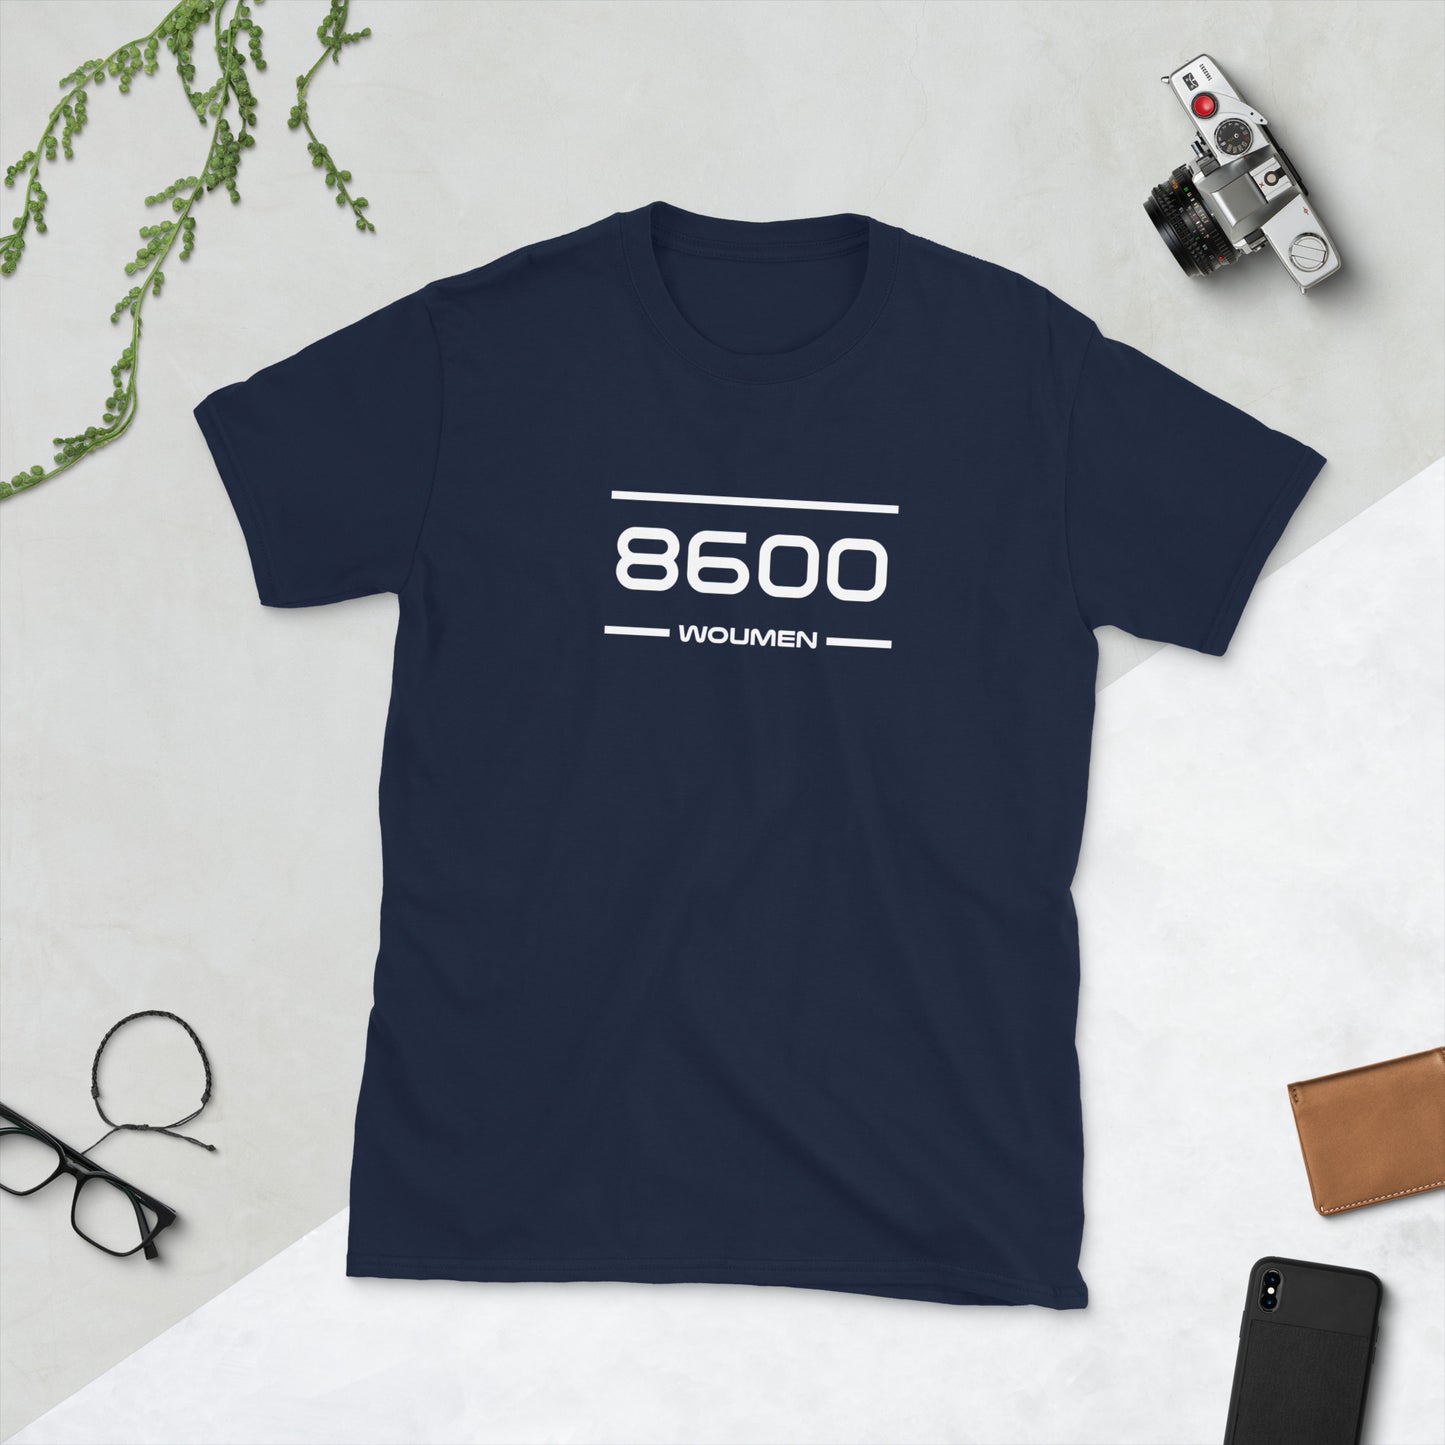 Tshirt - 8600 - Woumen